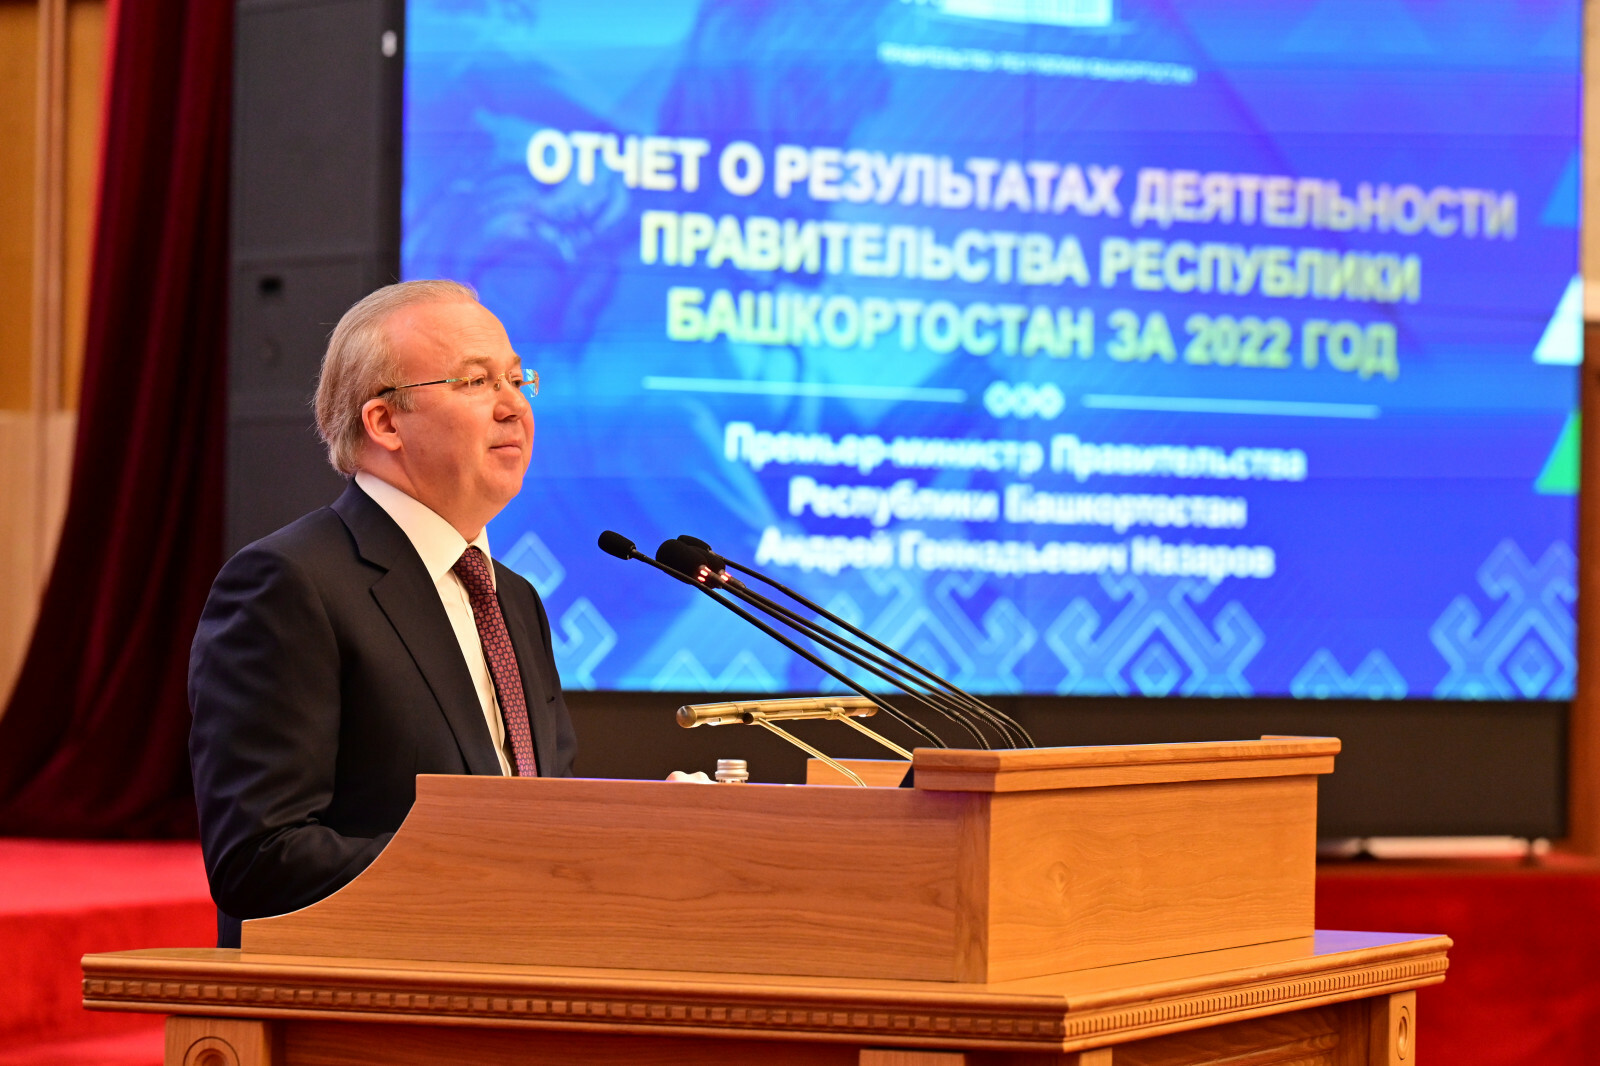 В Башкортостане определены задачи по улучшению экологического благополучия